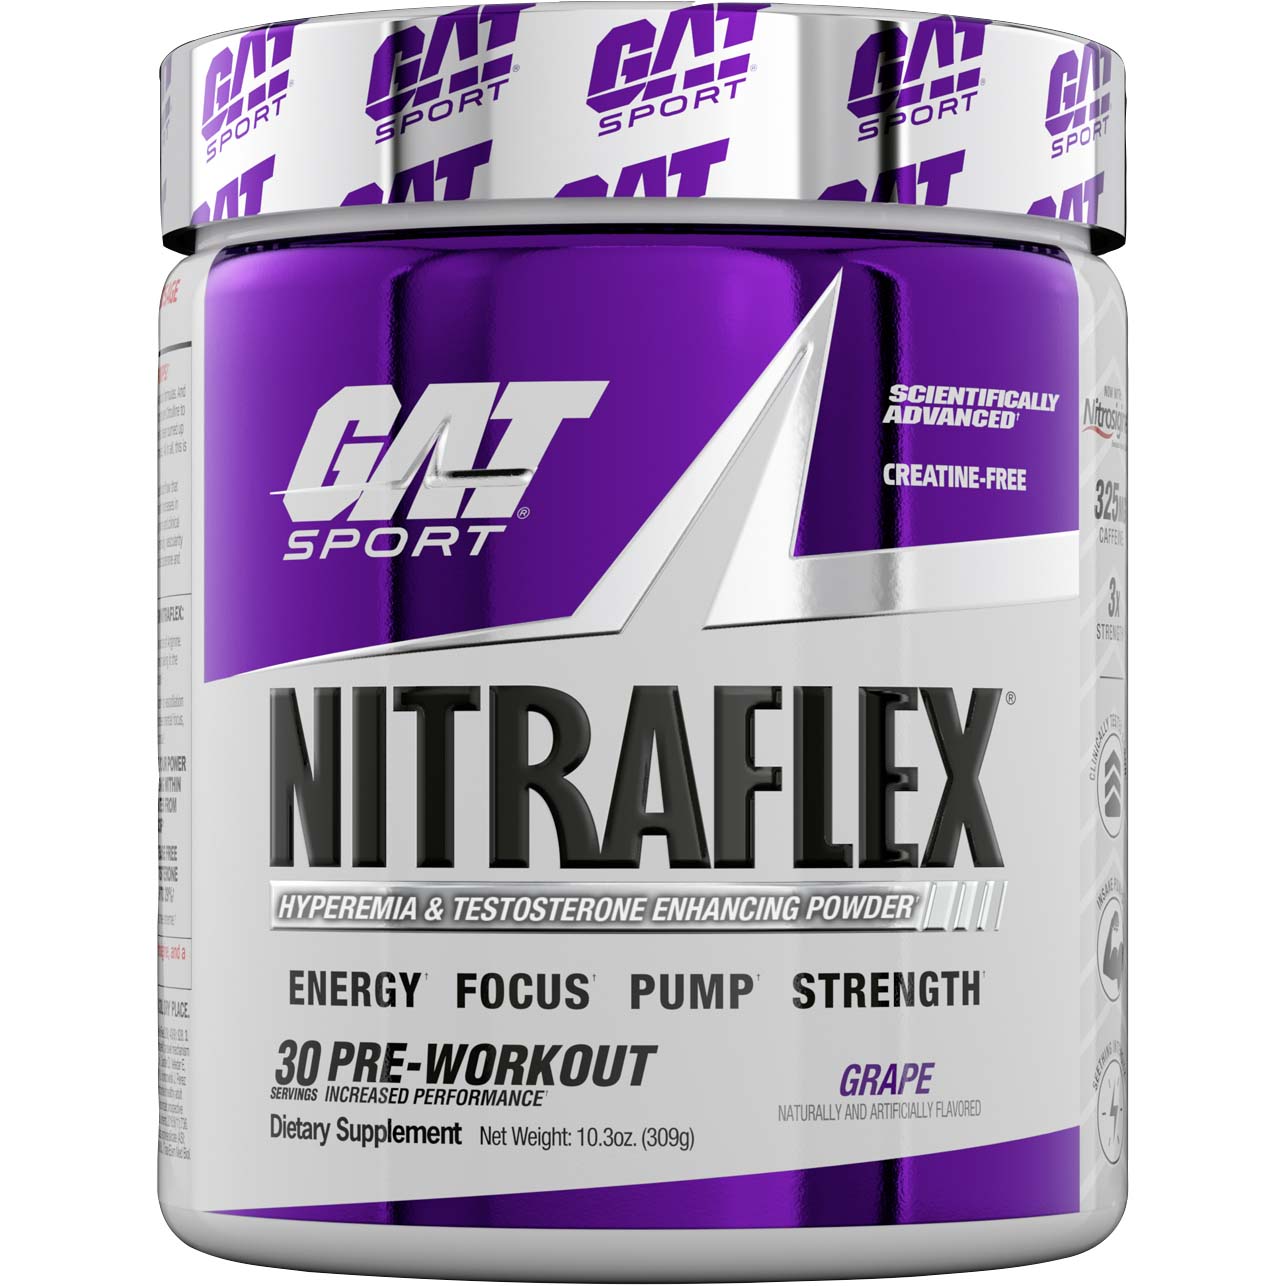 Gat Sport Nitraflex Testosterone Boosting Powder, Grape, 30